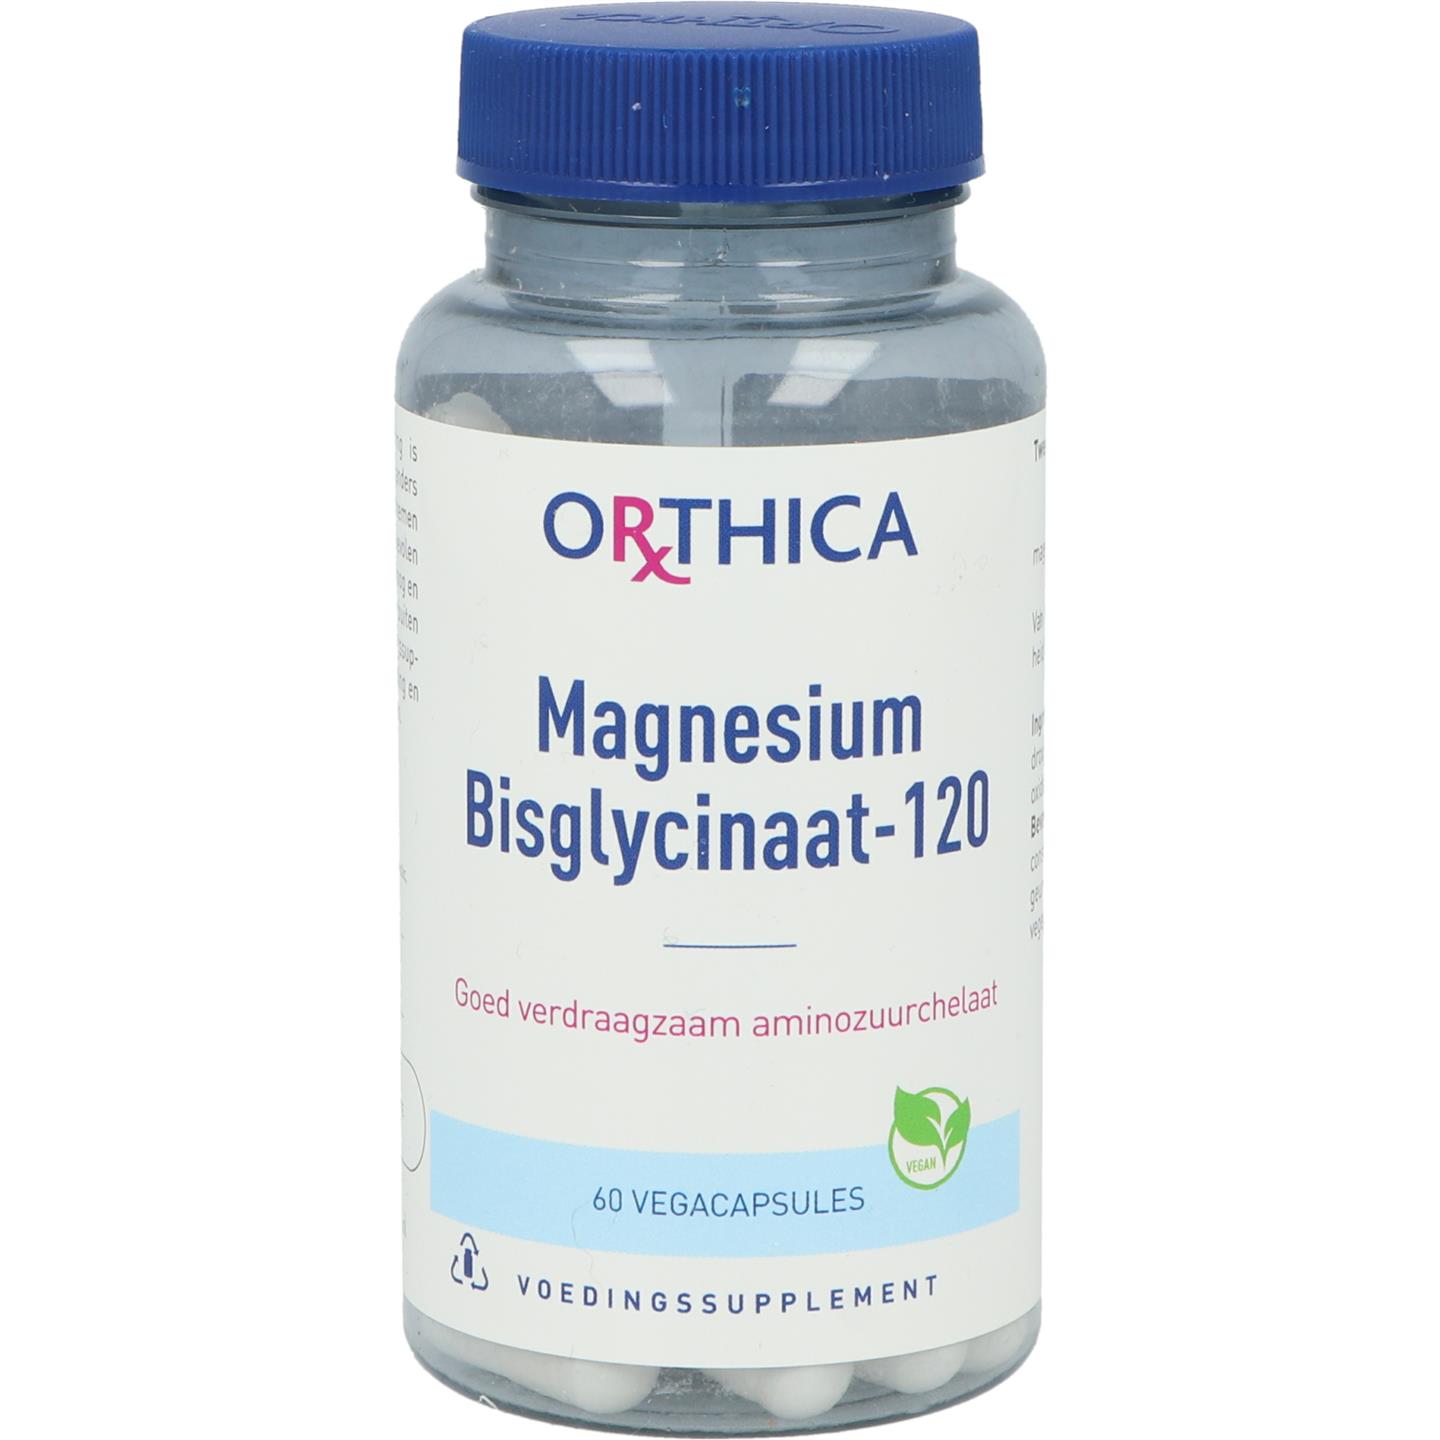 Magnesium Bisglycinaat-120